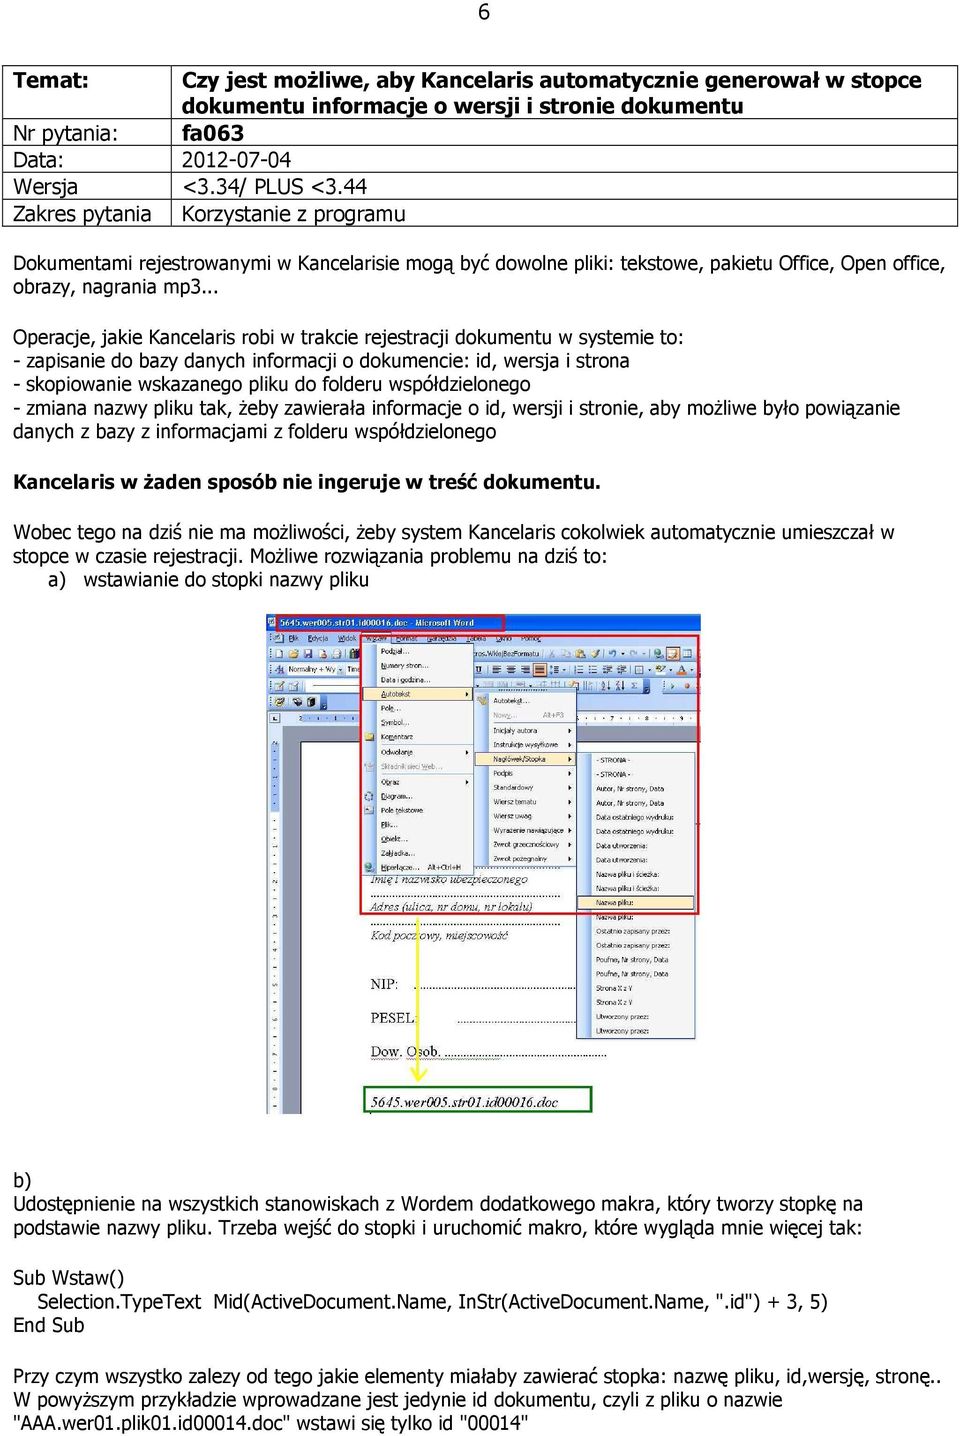 .. Operacje, jakie Kancelaris robi w trakcie rejestracji dokumentu w systemie to: - zapisanie do bazy danych informacji o dokumencie: id, wersja i strona - skopiowanie wskazanego pliku do folderu